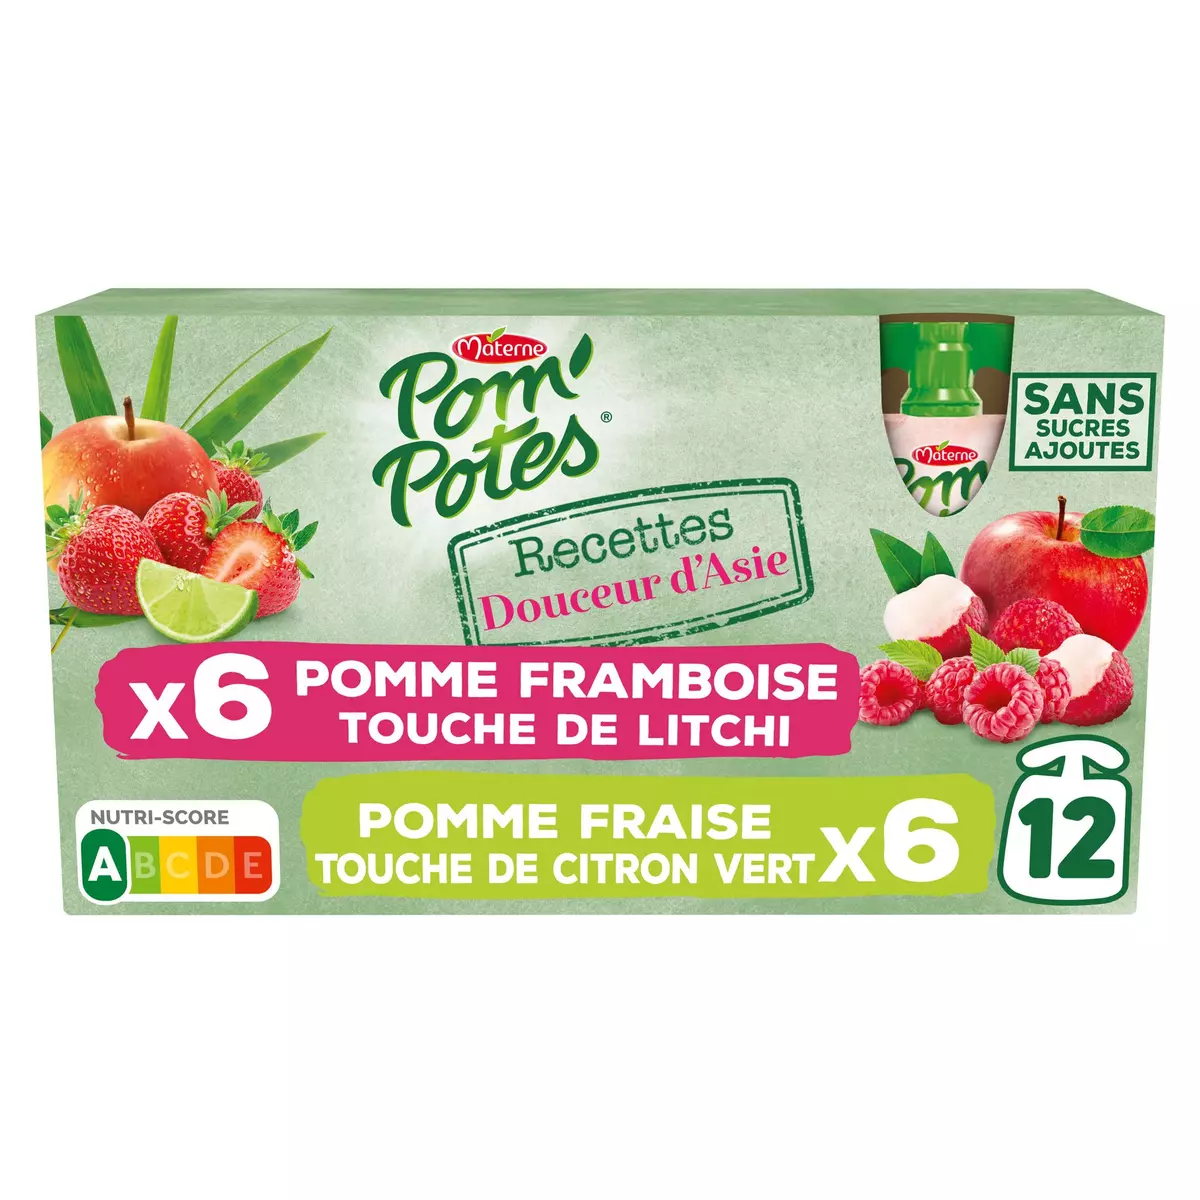 POM'POTES Gourdes compote pomme framboise litchi fraise citron vert sans sucres ajotués 12x90g